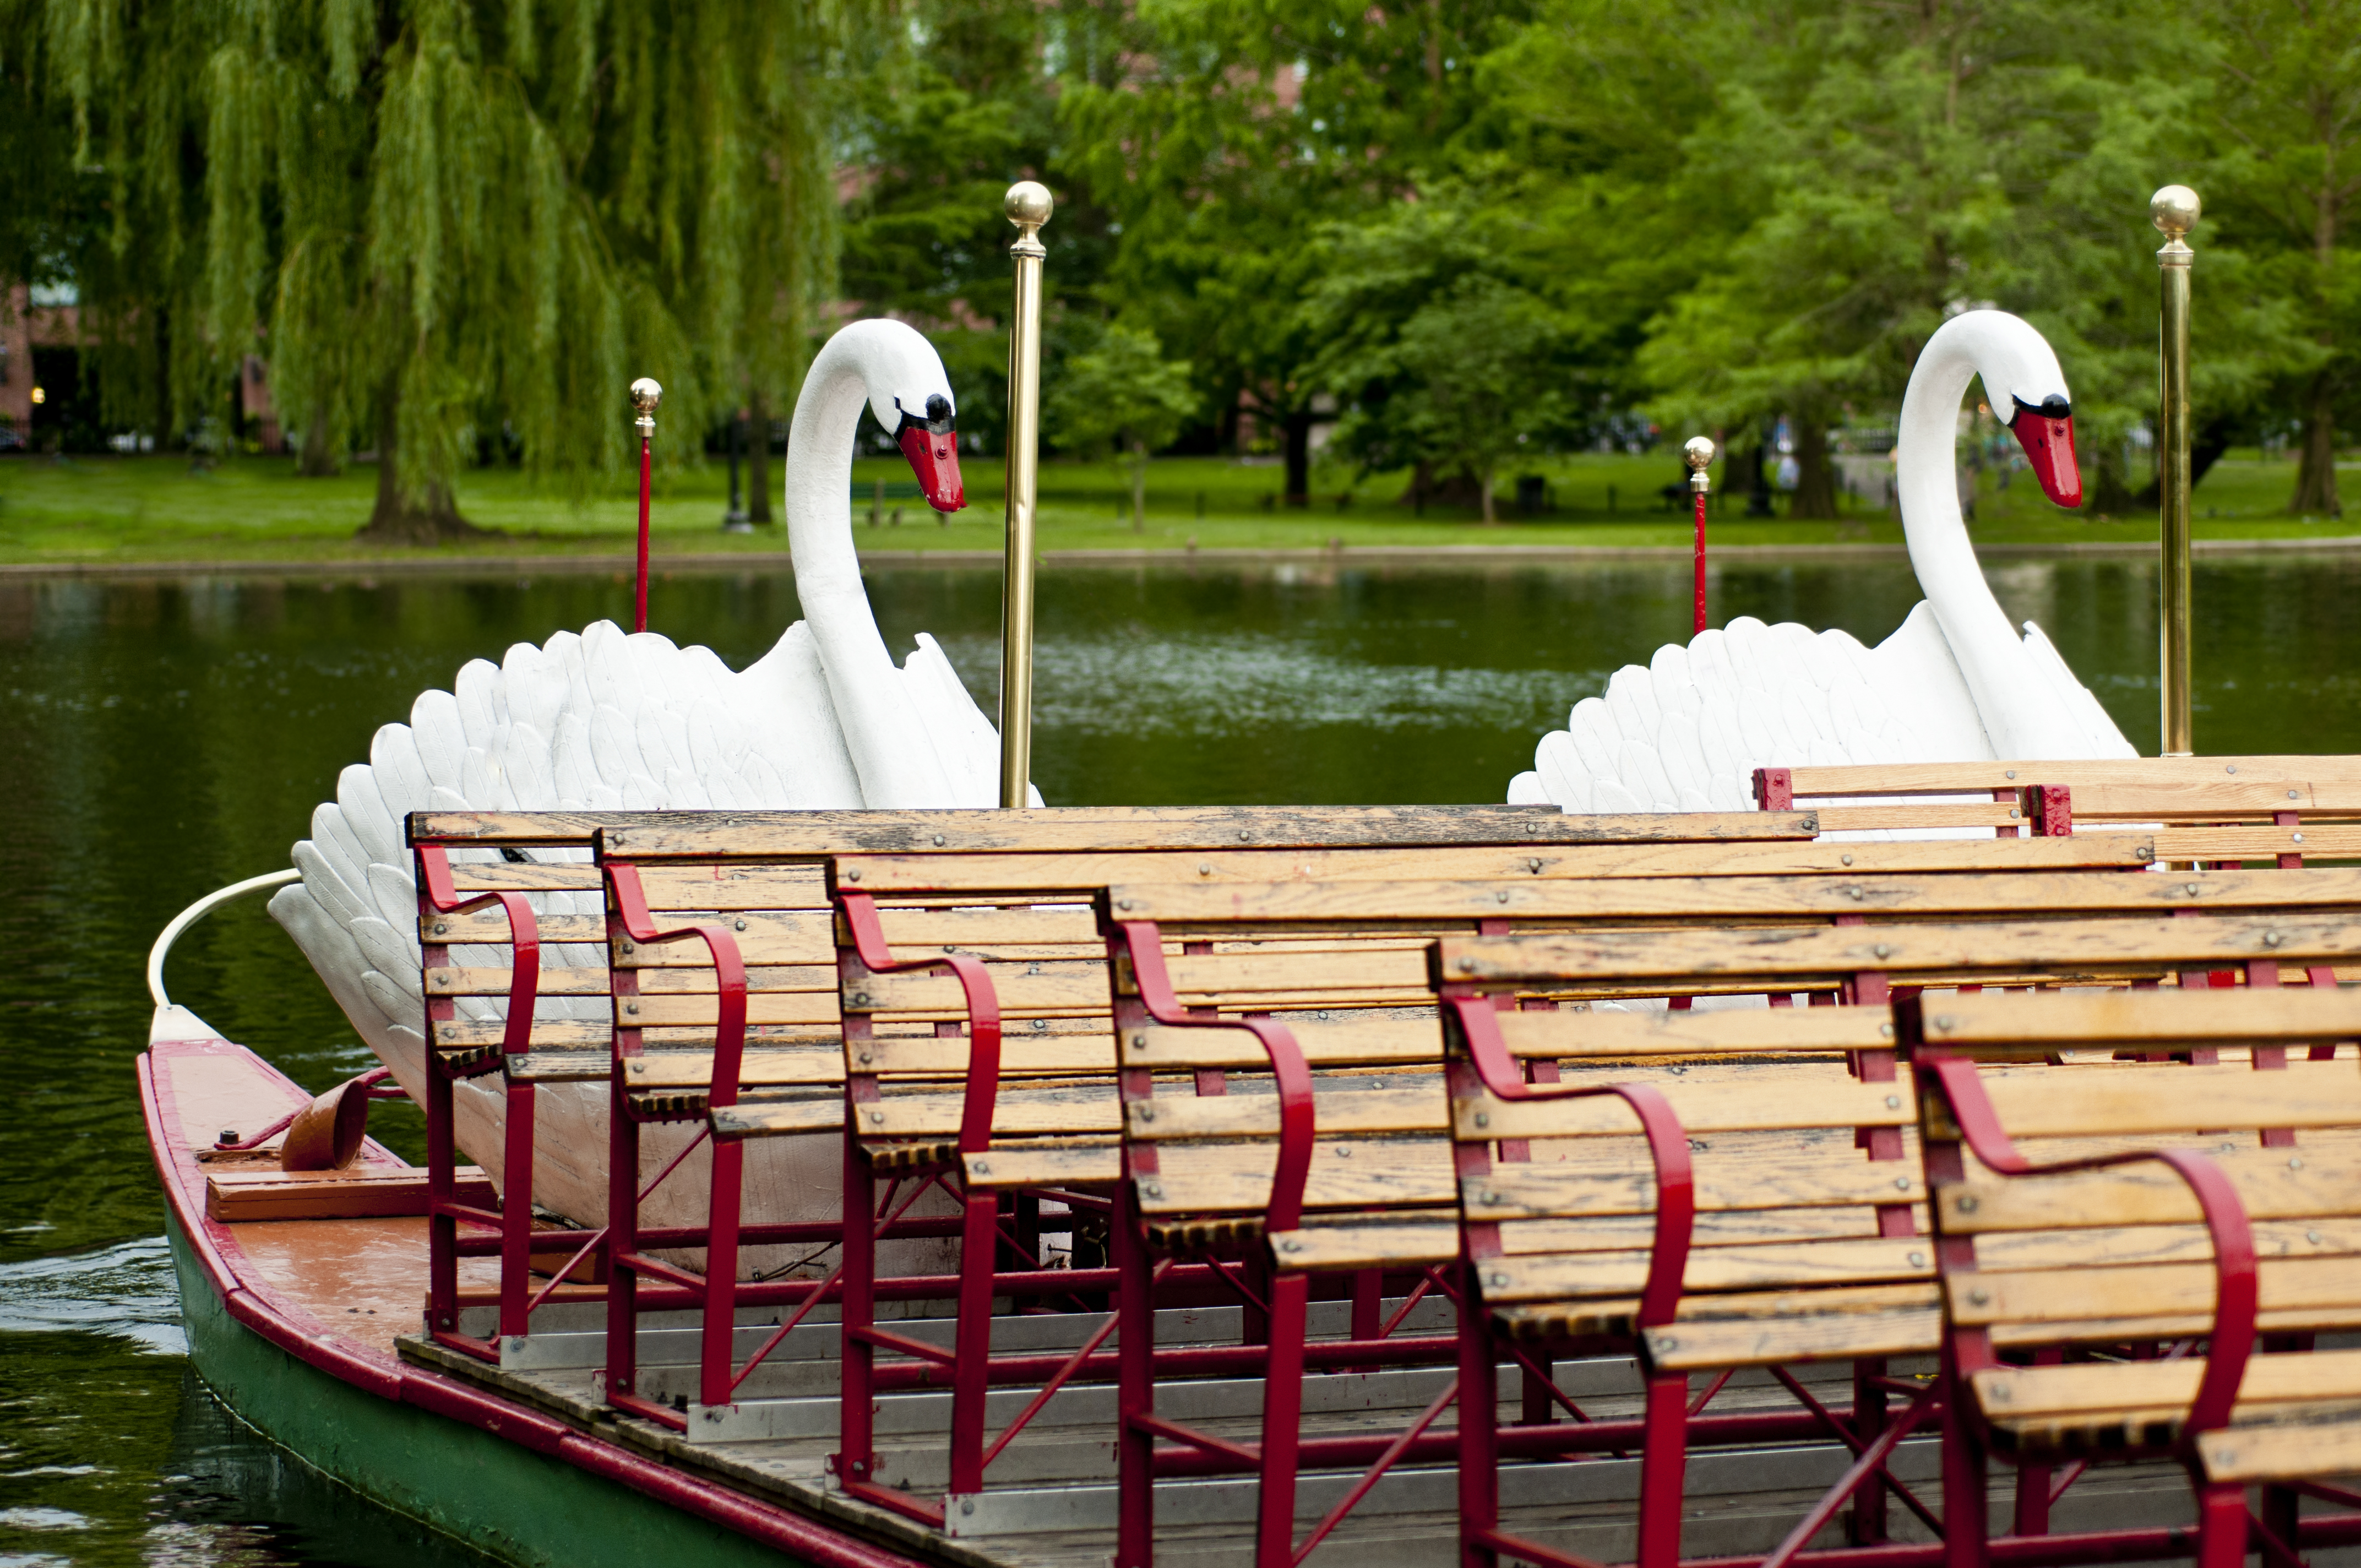 Best Things to Do in Boston - Swan Boats in the Public Garden